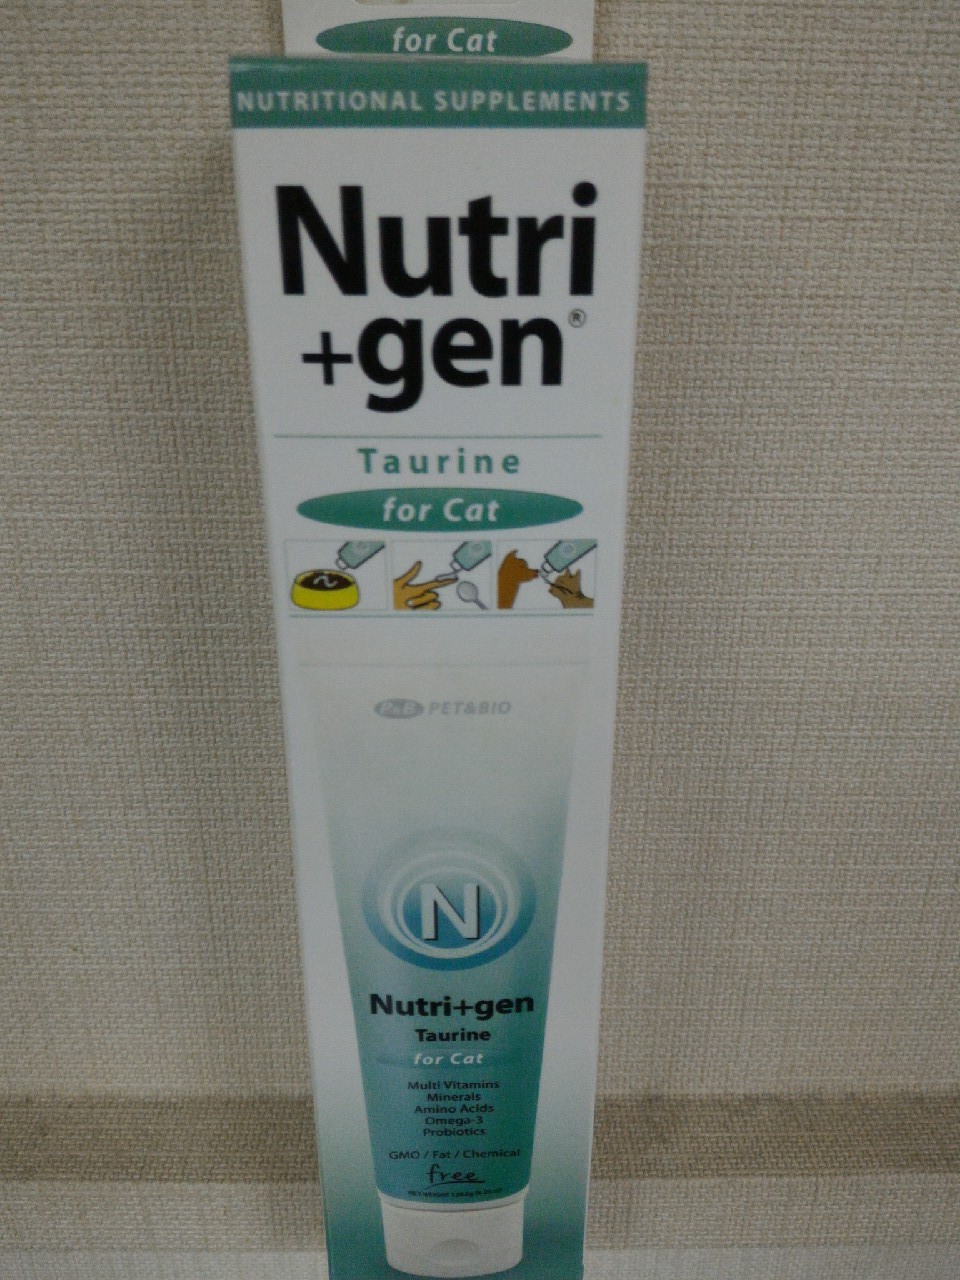 優萃健寵物營養膏-牛磺酸
Nutri+gen